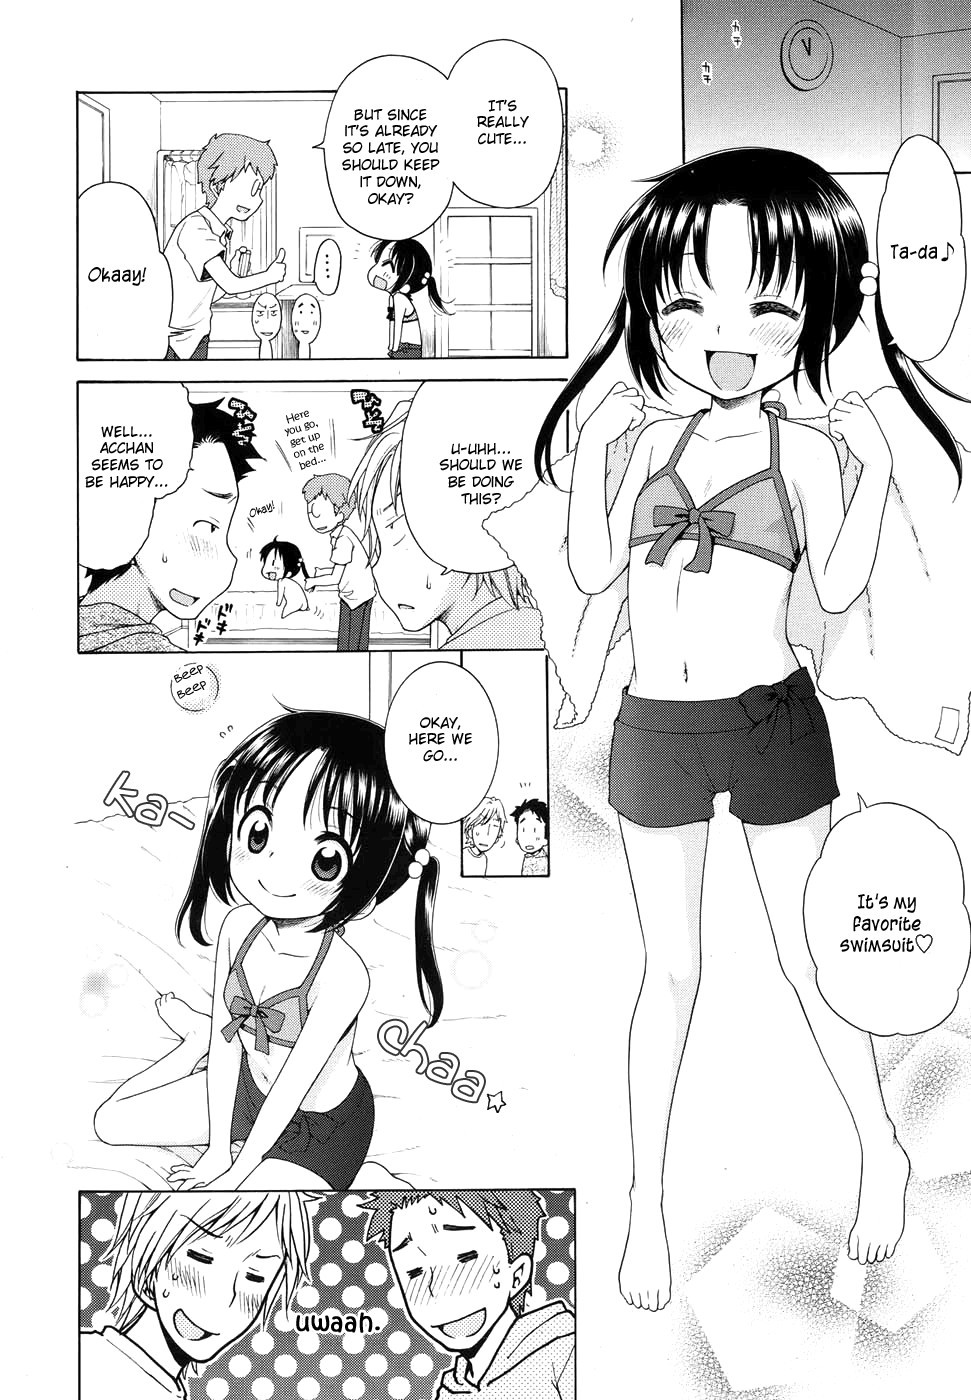 Tsukimisou no Akari | The Light of Tsukimi Manor Ch. 1-6 - Page 8 - 9hentai  - Hentai Manga, Read Hentai, Doujin Manga